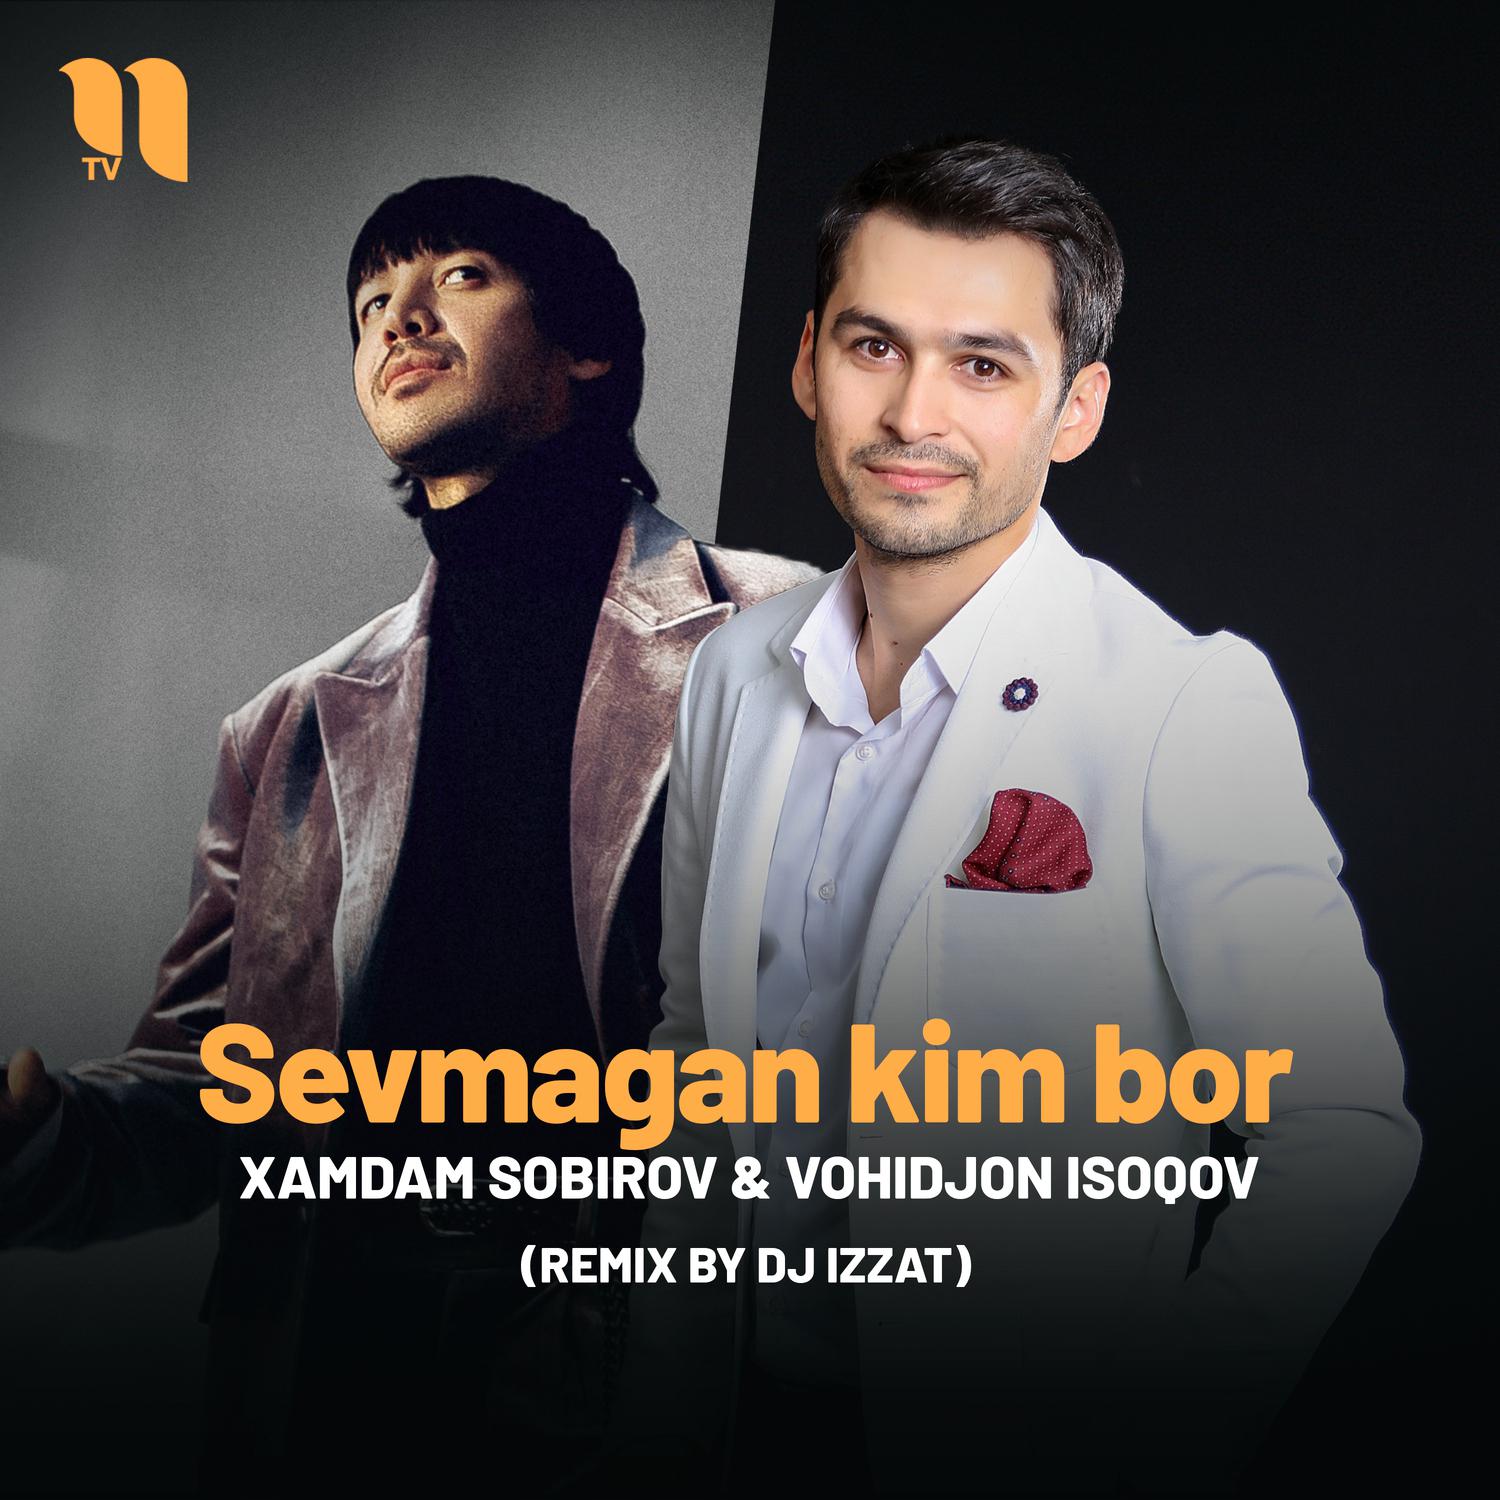 Xamdam Sobirov - Sevmagan kim bor (remix by Dj Izzat)